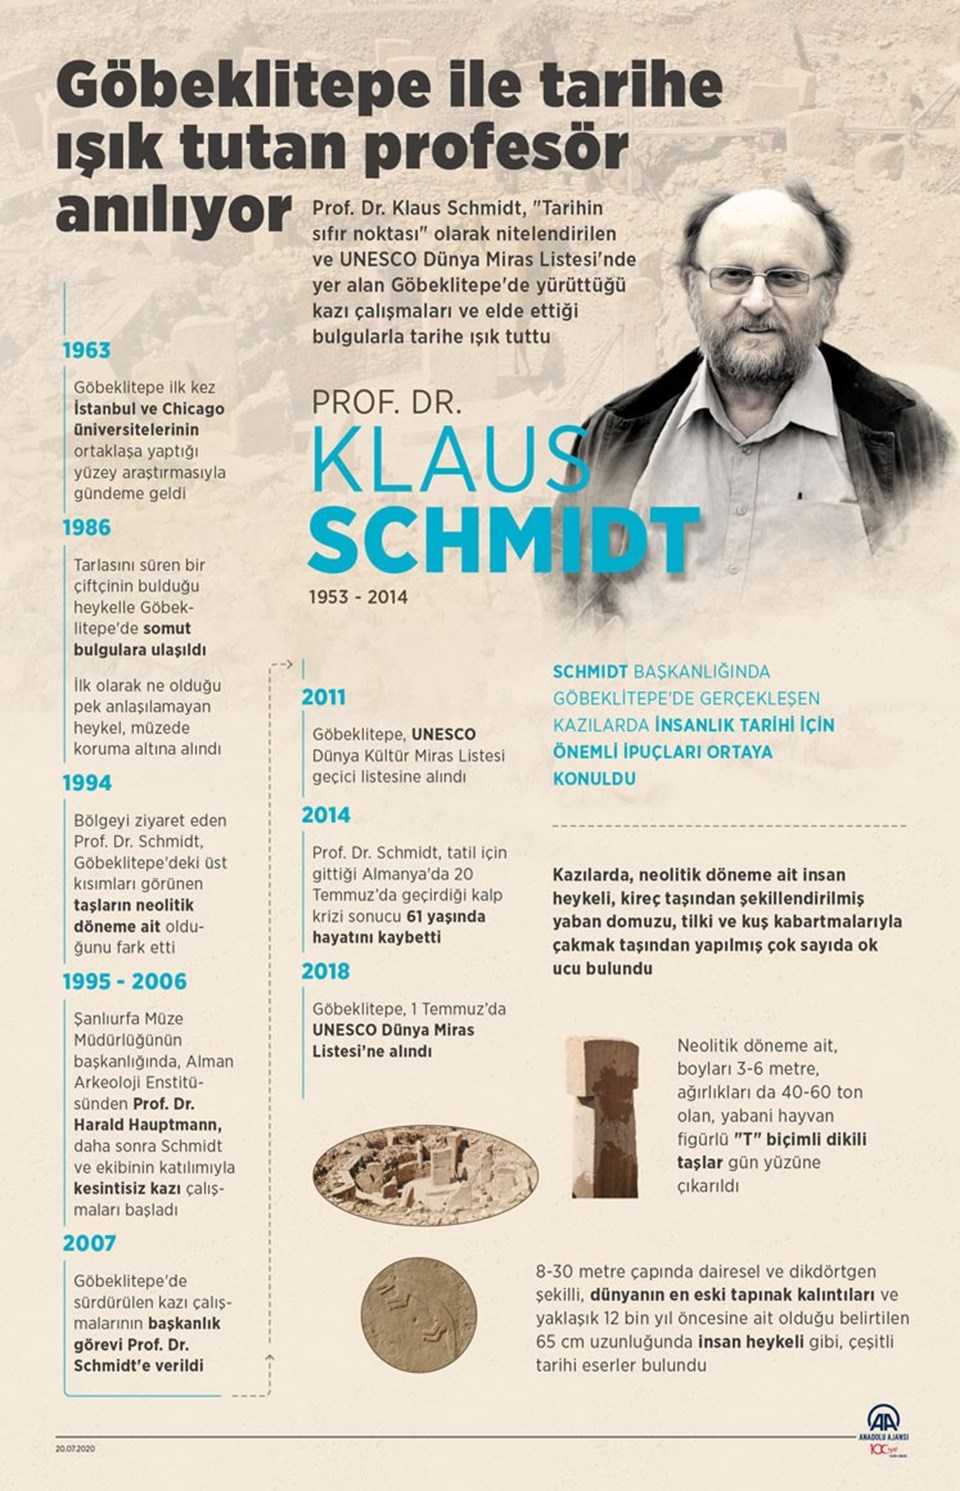 Göbeklitepe ile tarihe ışık tutan Prof. Dr. Klaus Schmidt anılıyor - 1